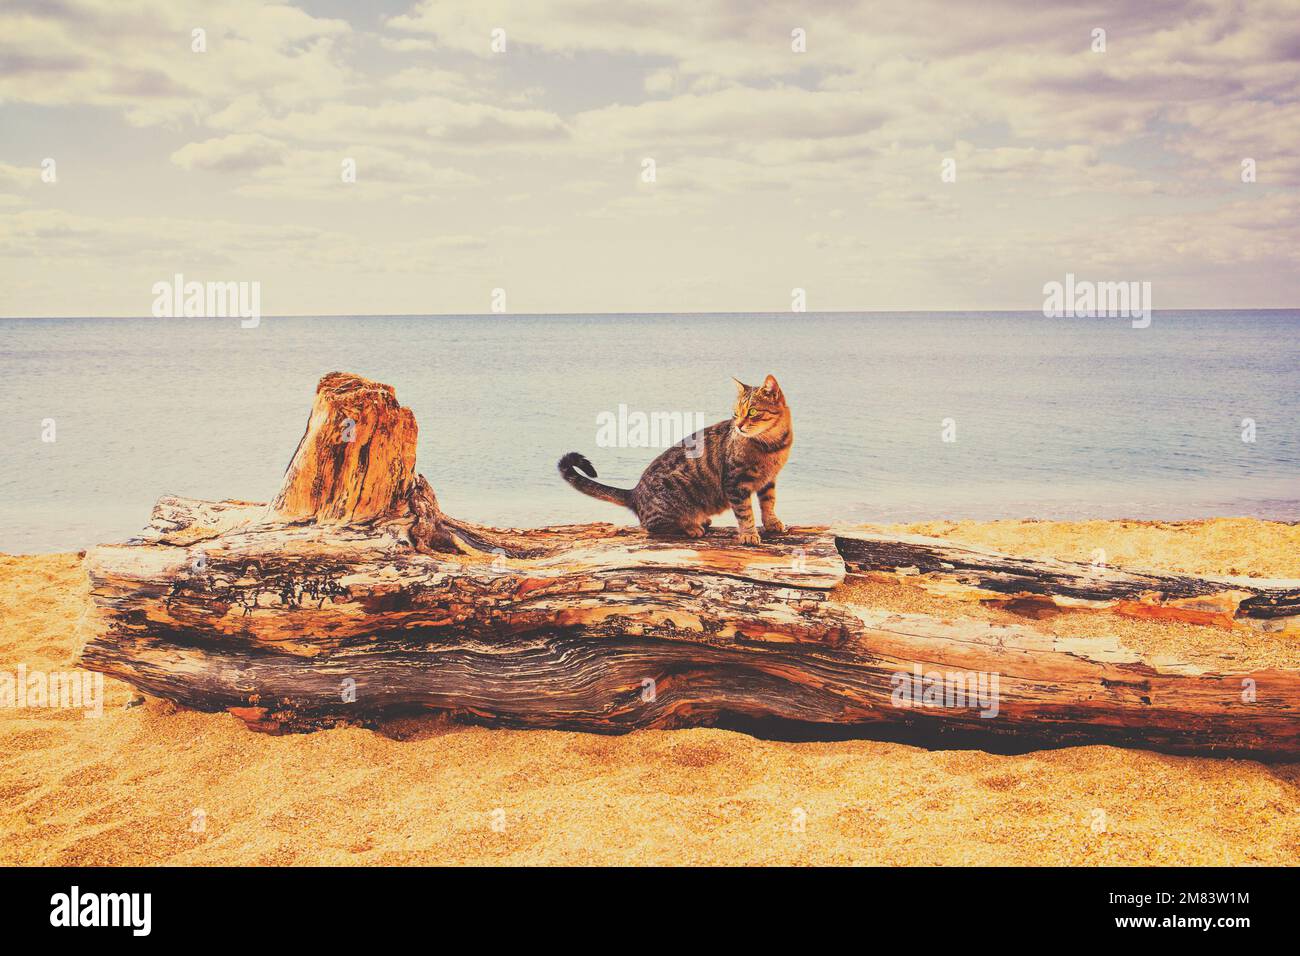 Gestreifte Katze, die am Strand auf einem Haken sitzt. Seascape an einem sonnigen Tag. Ruhiges Meer Stockfoto